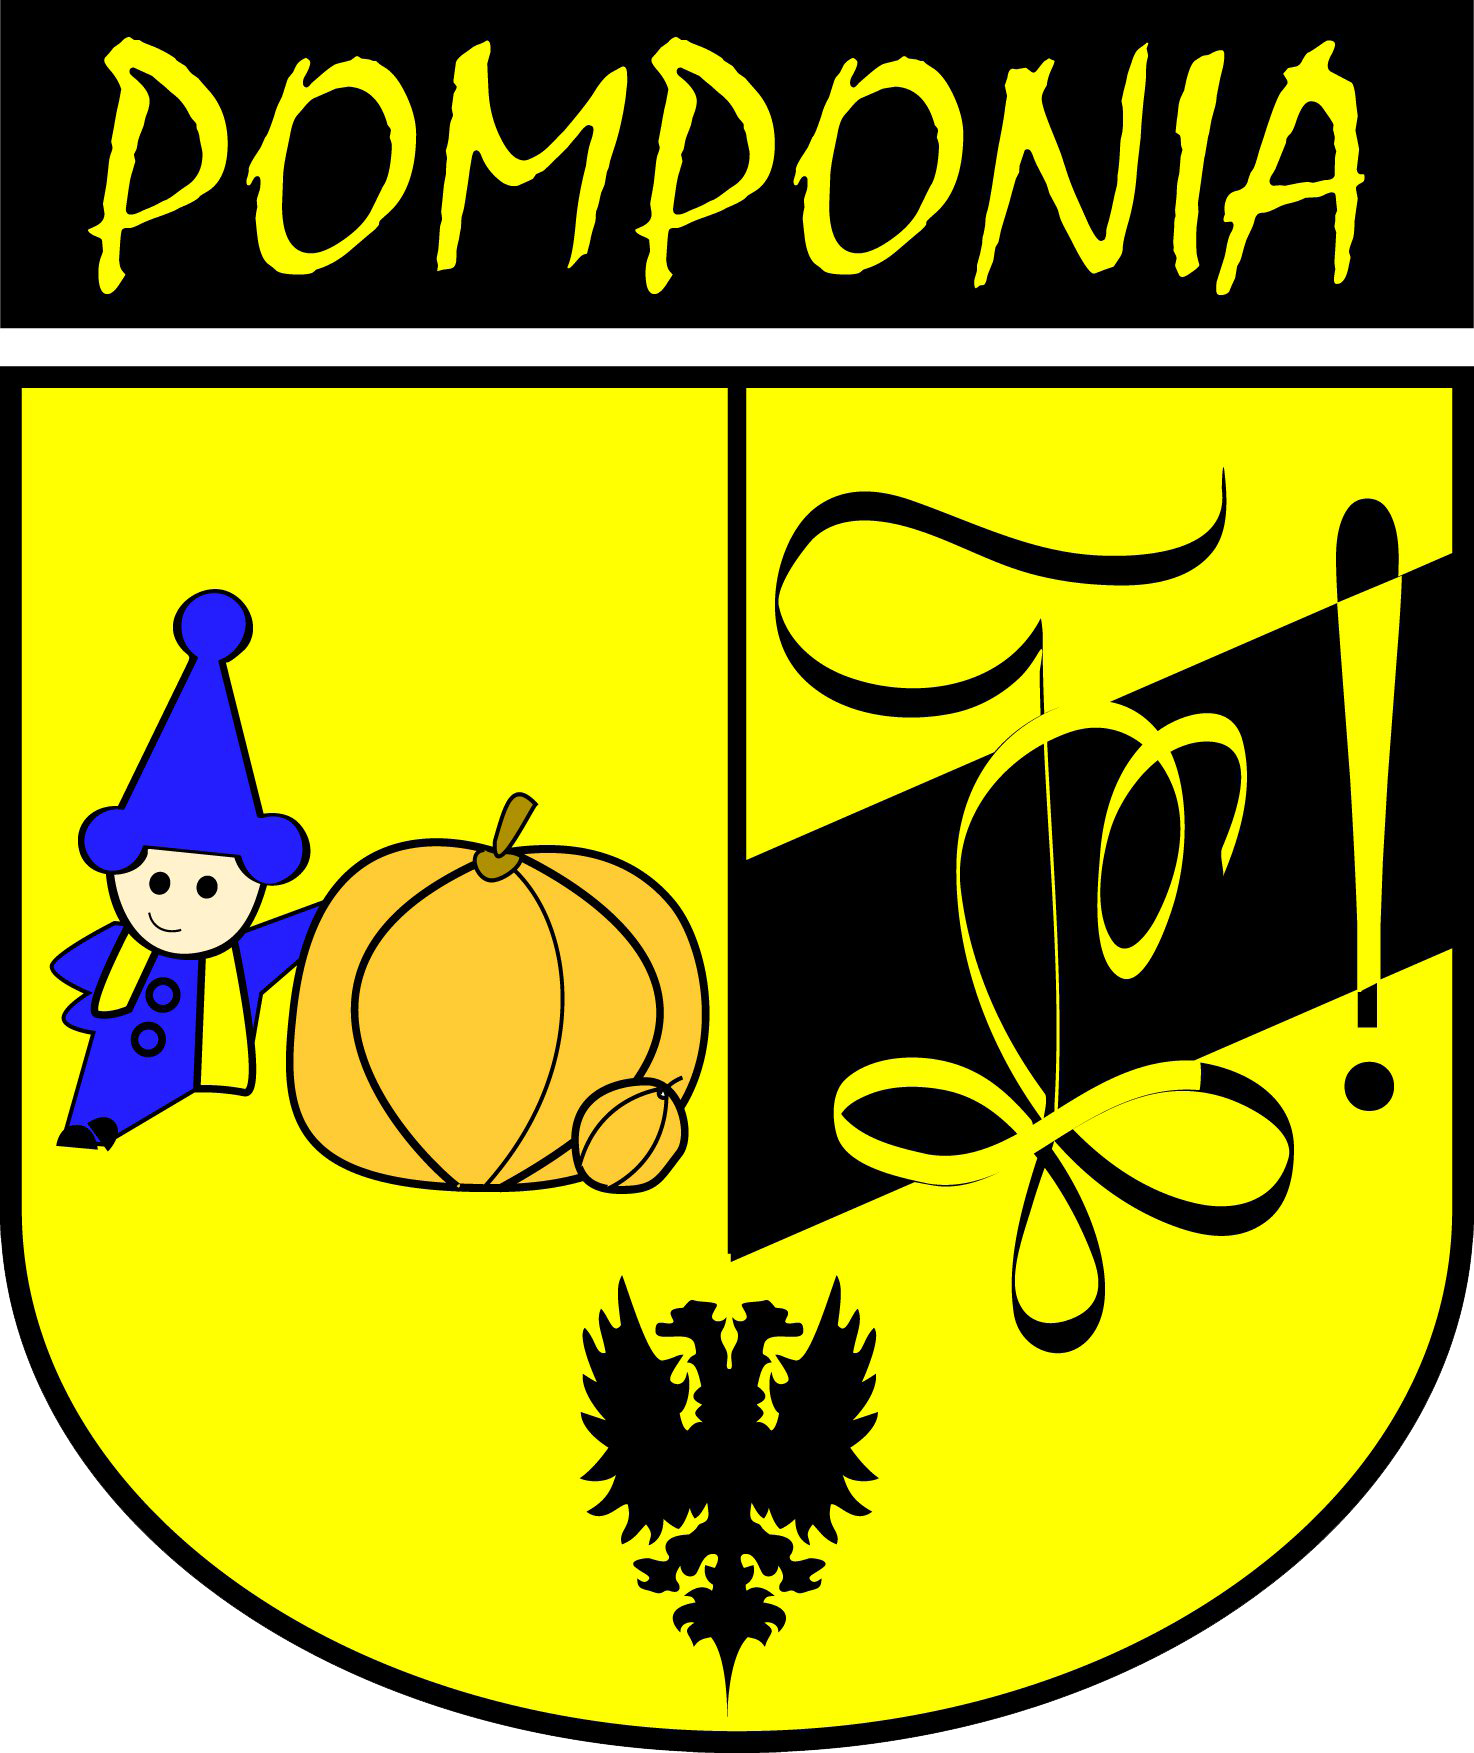 Wapenschild Pomponia